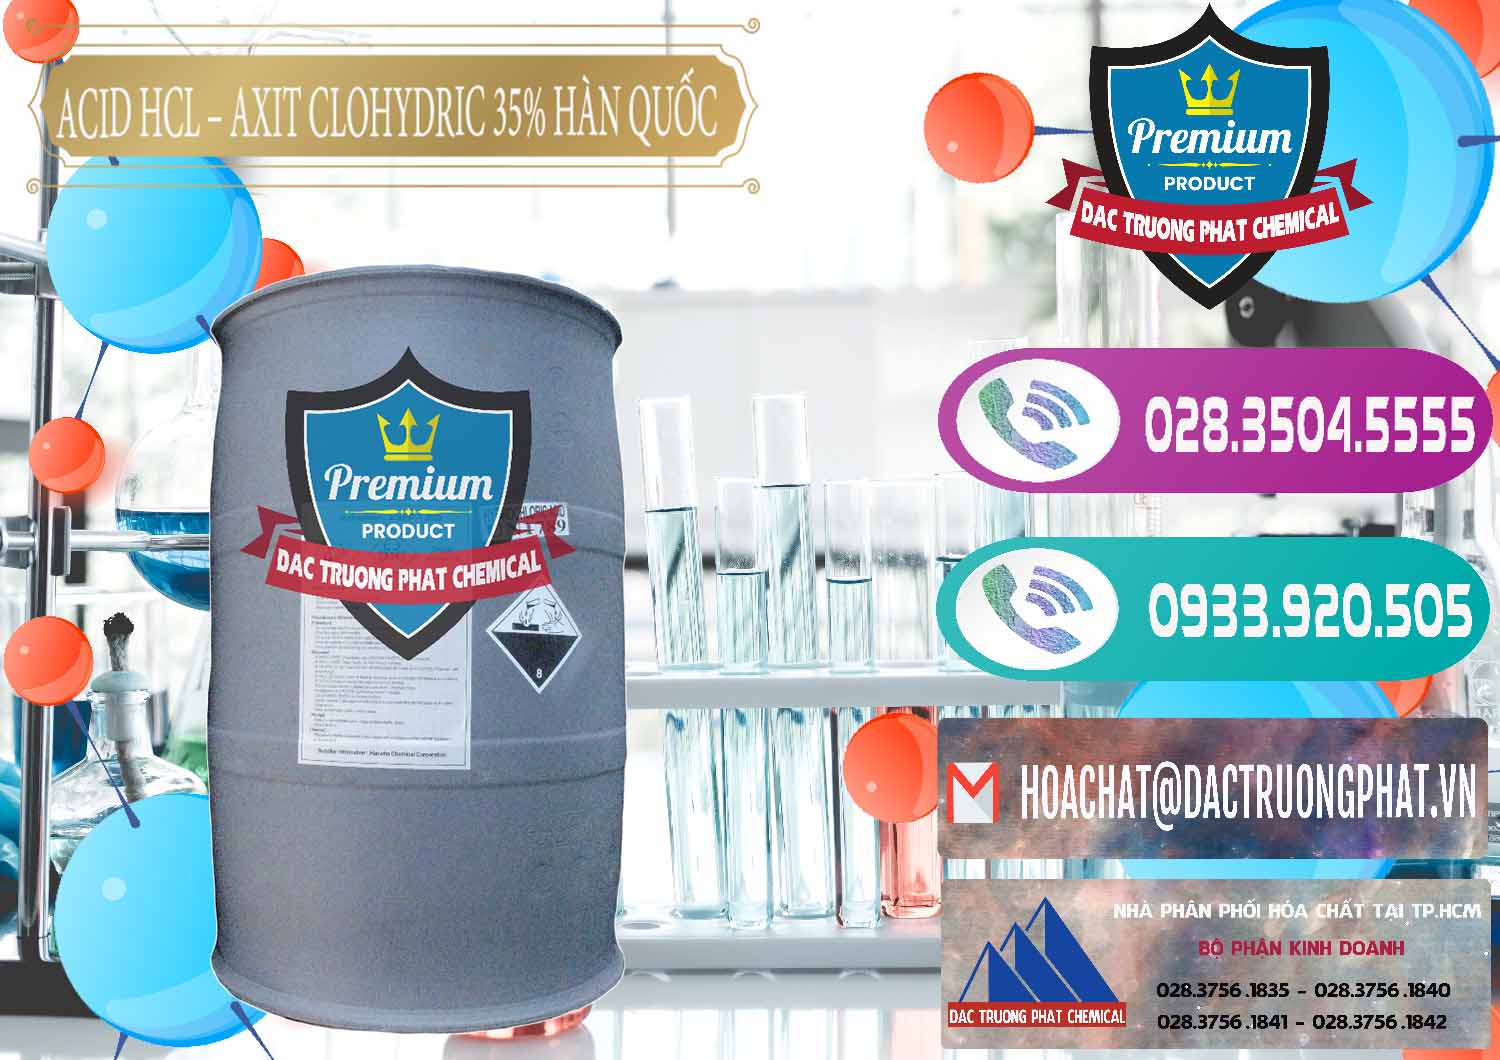 Nơi kinh doanh và bán Acid HCL - Axit Cohidric 35% Hàn Quốc Korea - 0011 - Công ty chuyên kinh doanh - phân phối hóa chất tại TP.HCM - hoachatxulynuoc.com